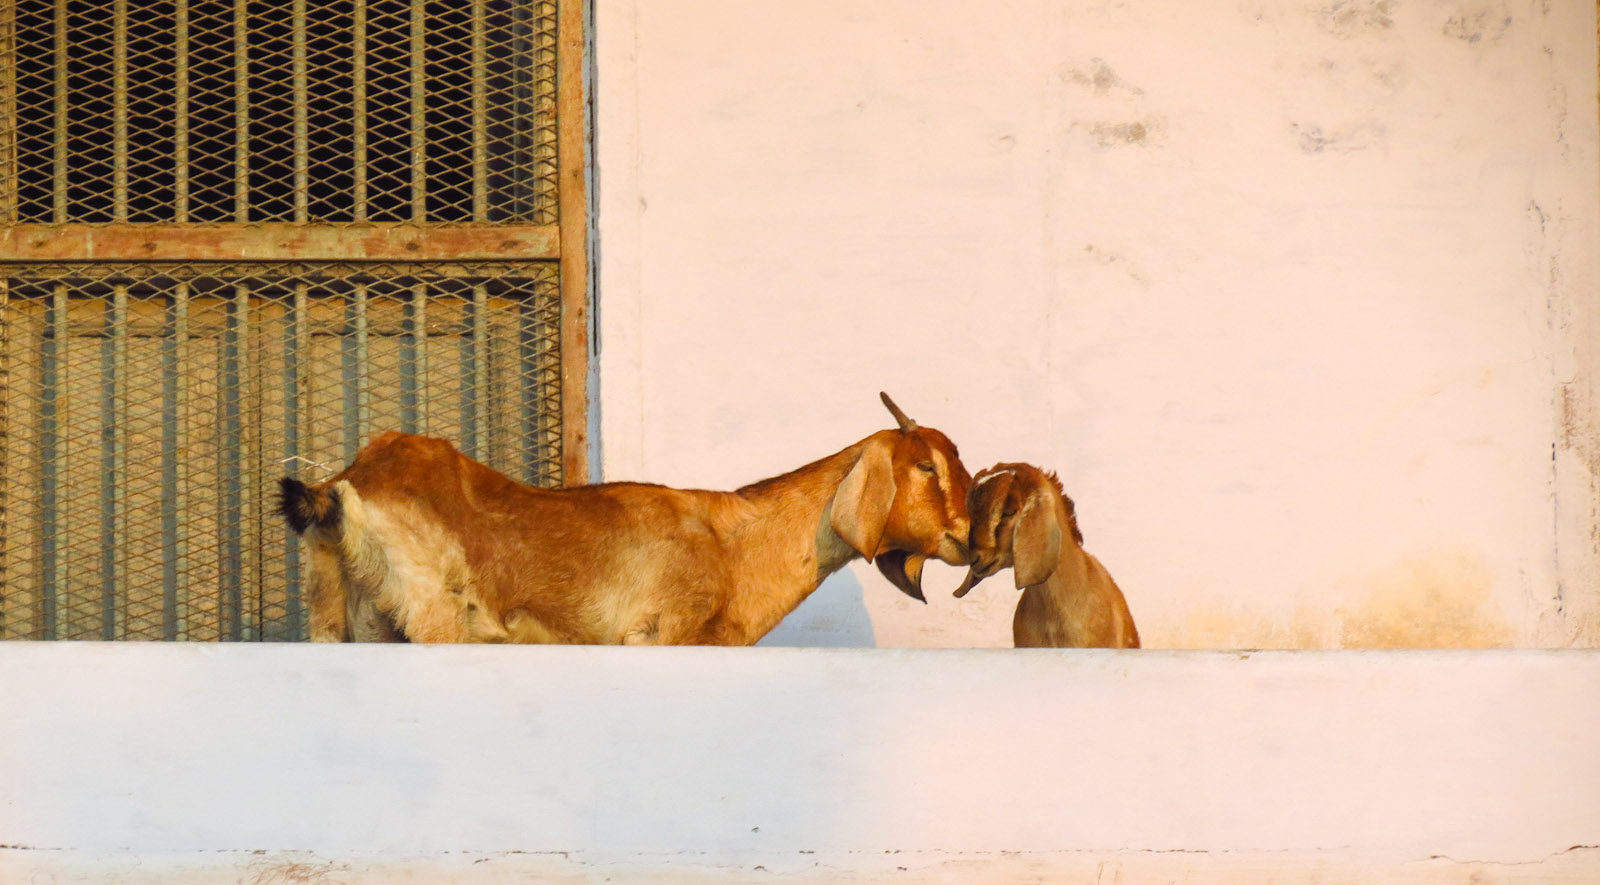 goats-cuddling-india-varanasi